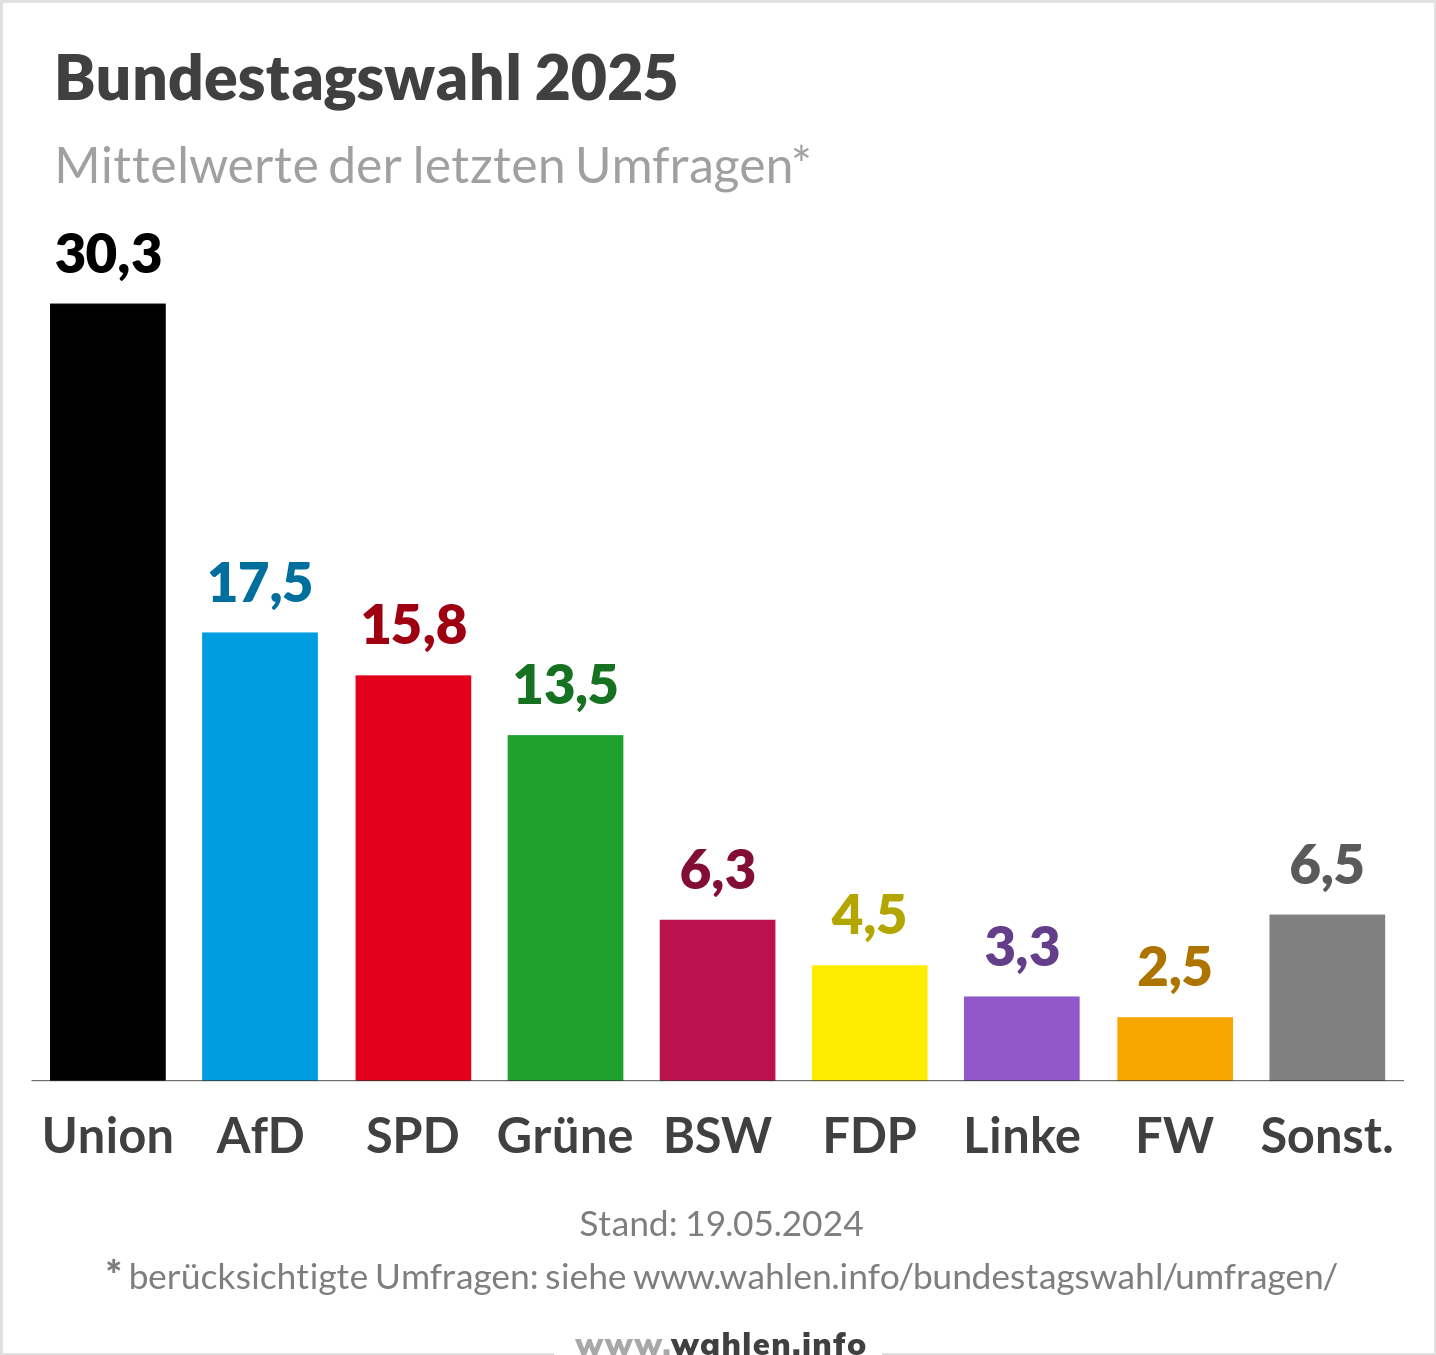 Bundestagswahl 2025, Umfrage mit FW und BSW